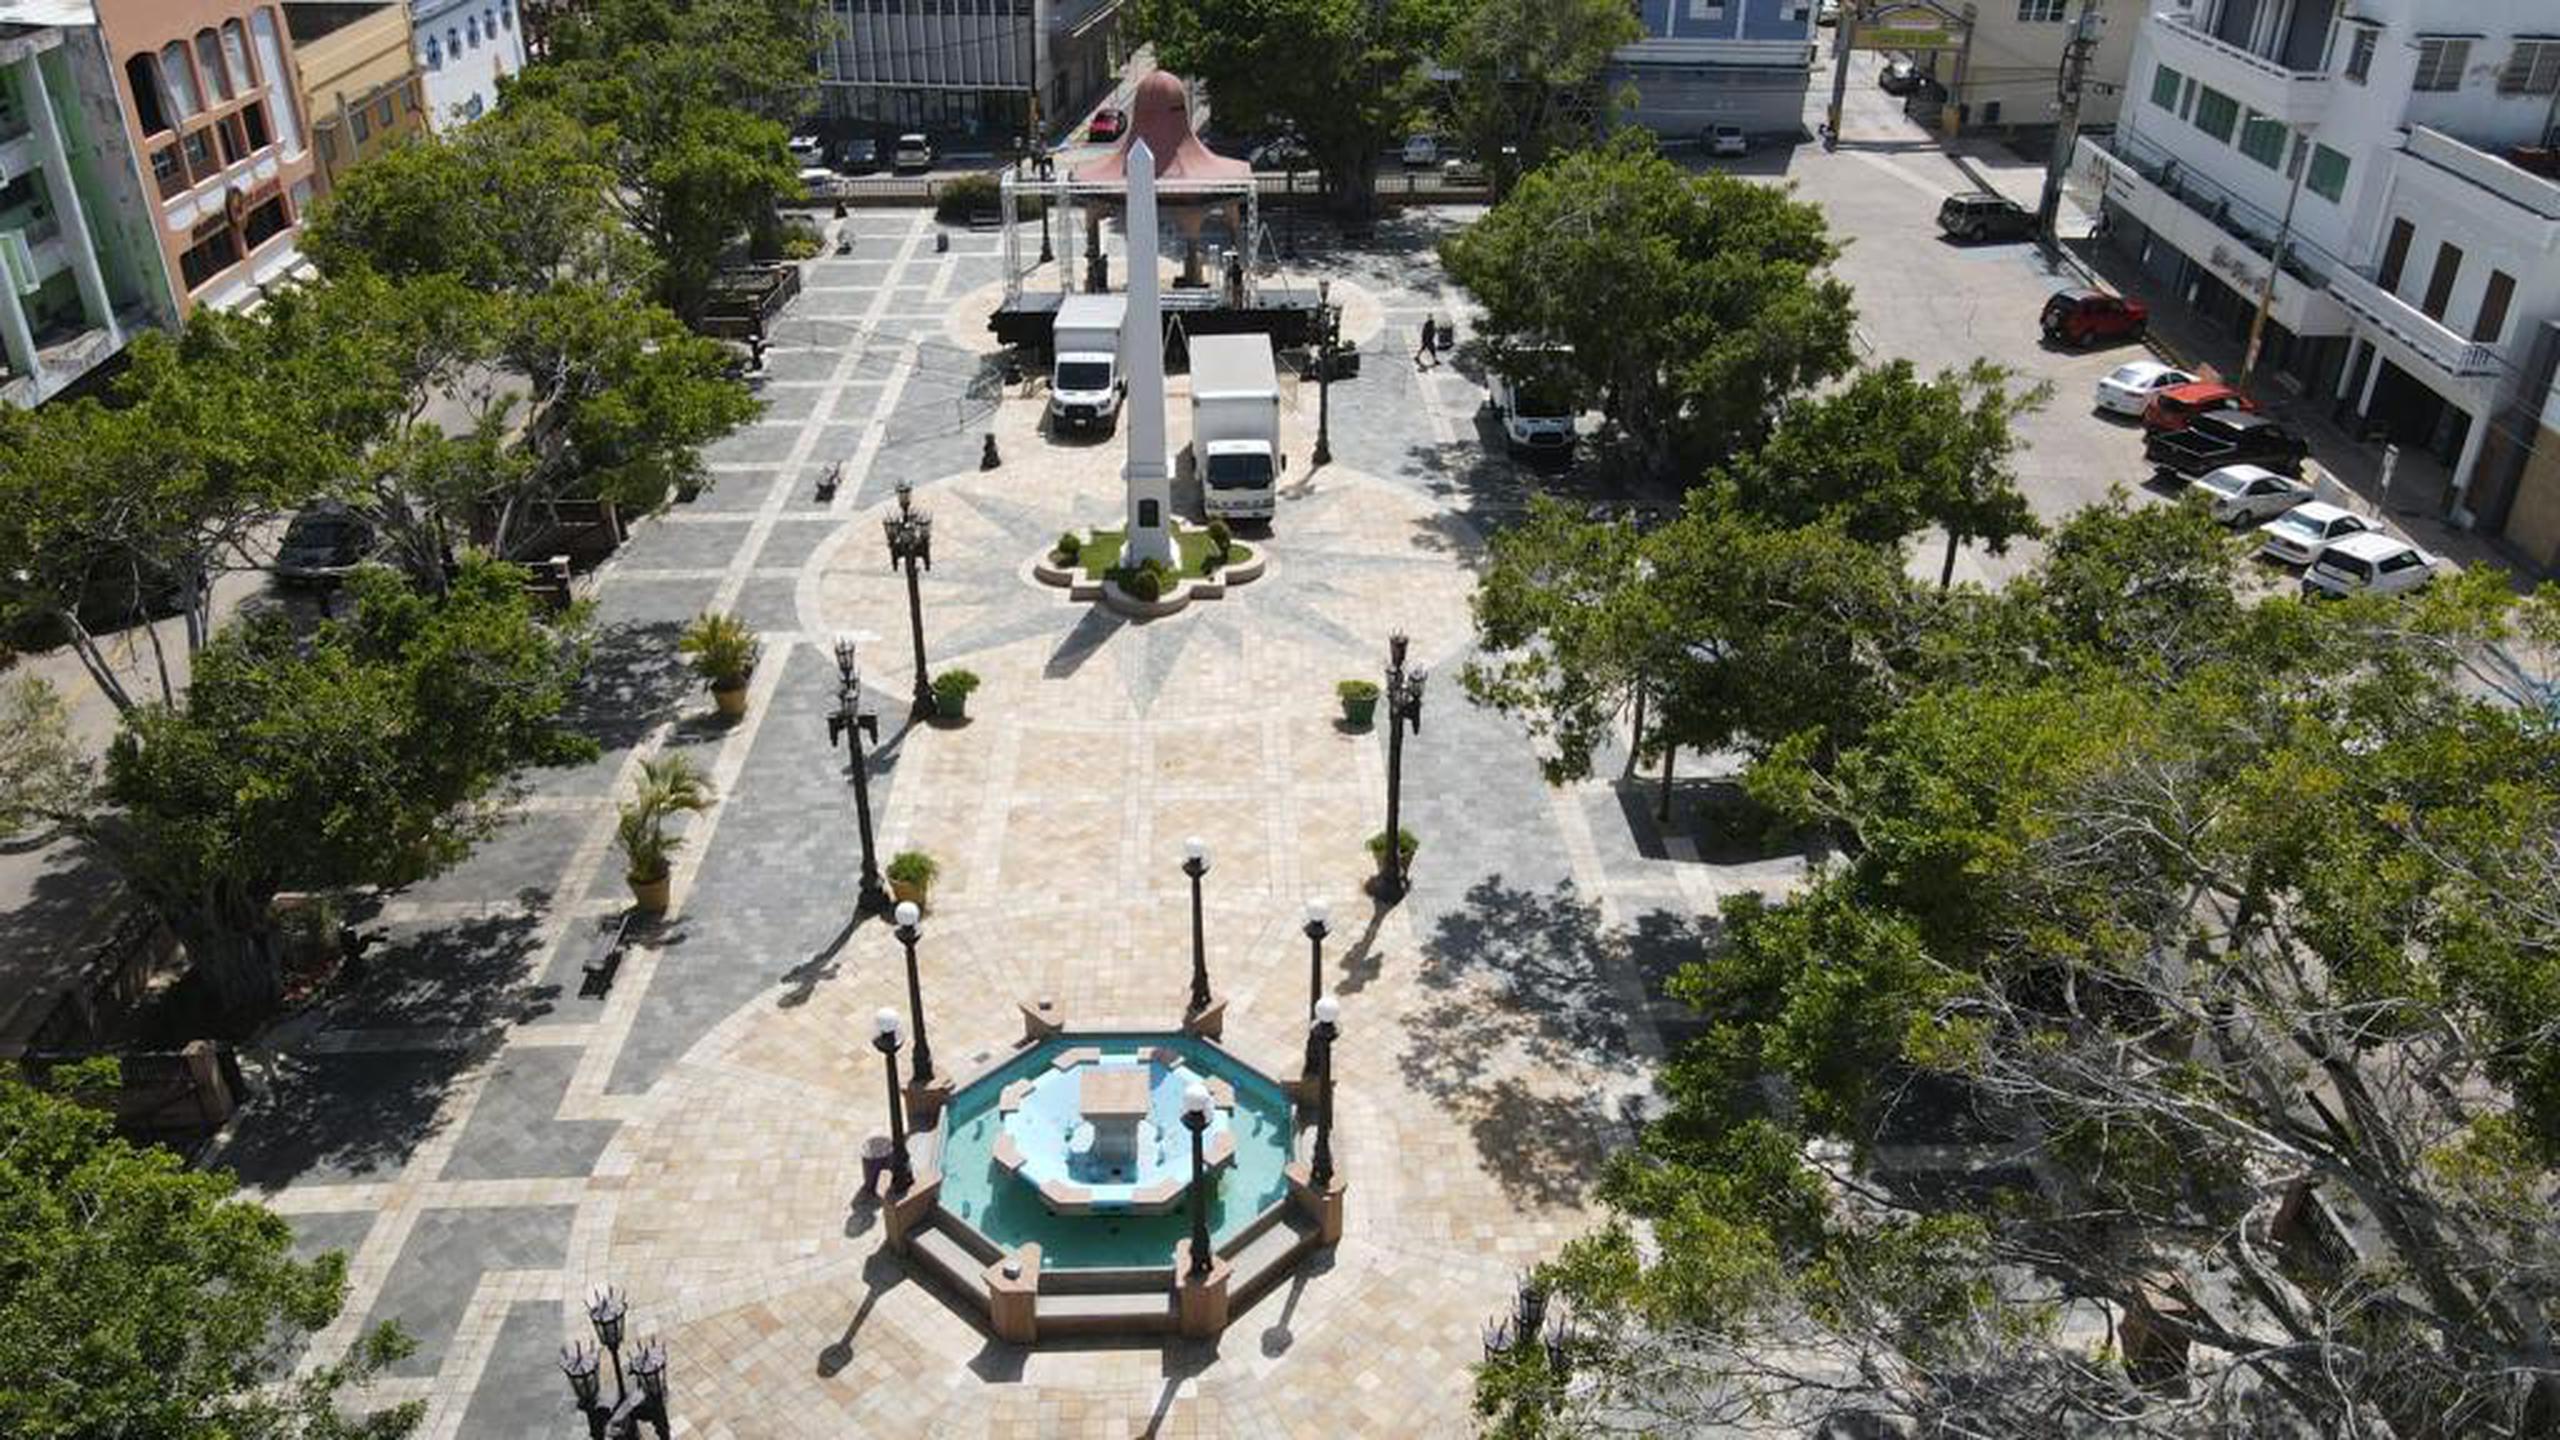 Plaza de Arecibo